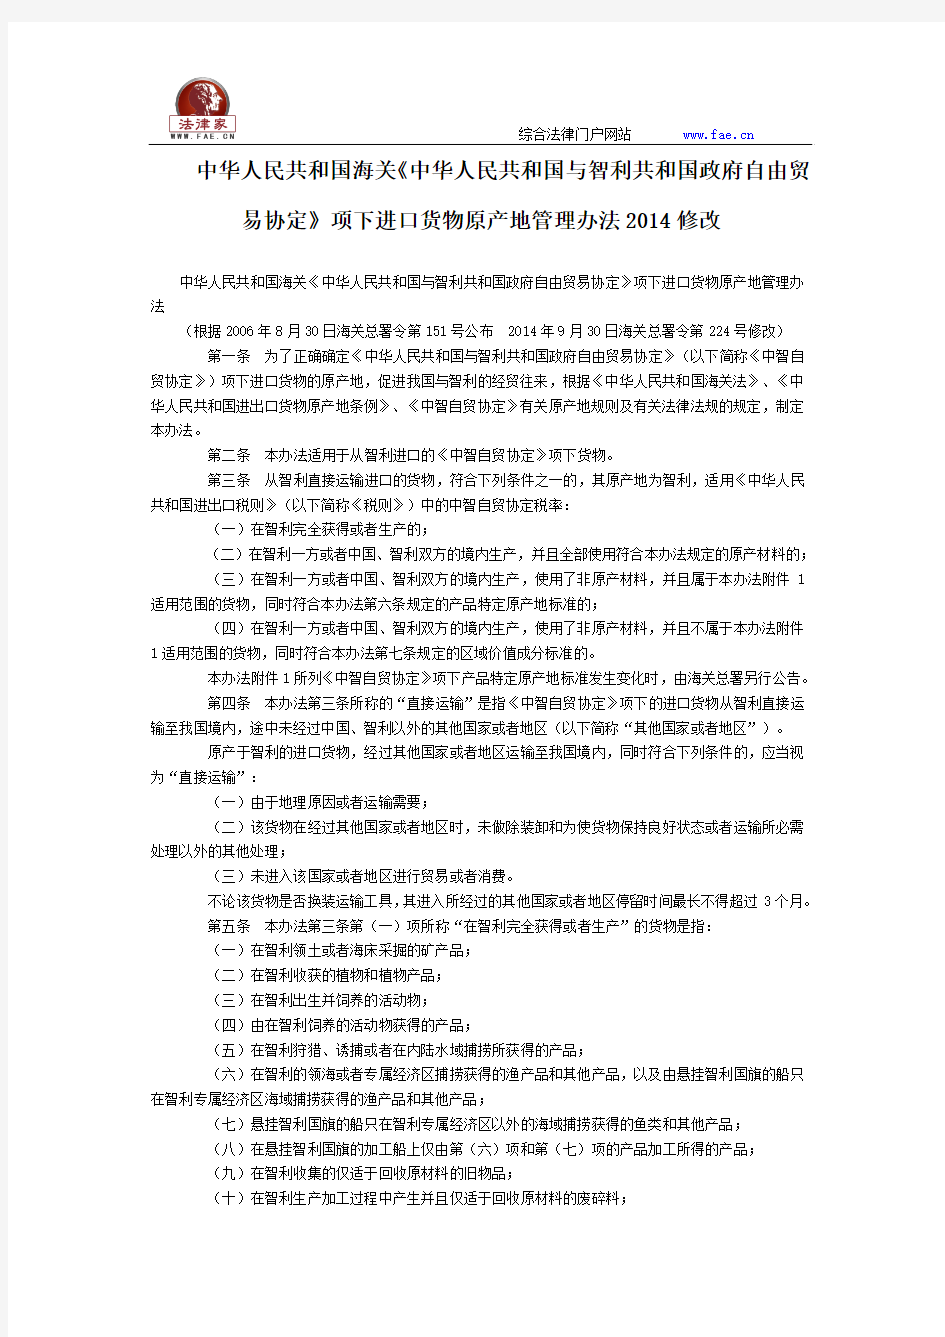 中华人民共和国海关项下进口货物原产地管理办法2014修改全文--国务院部委规章